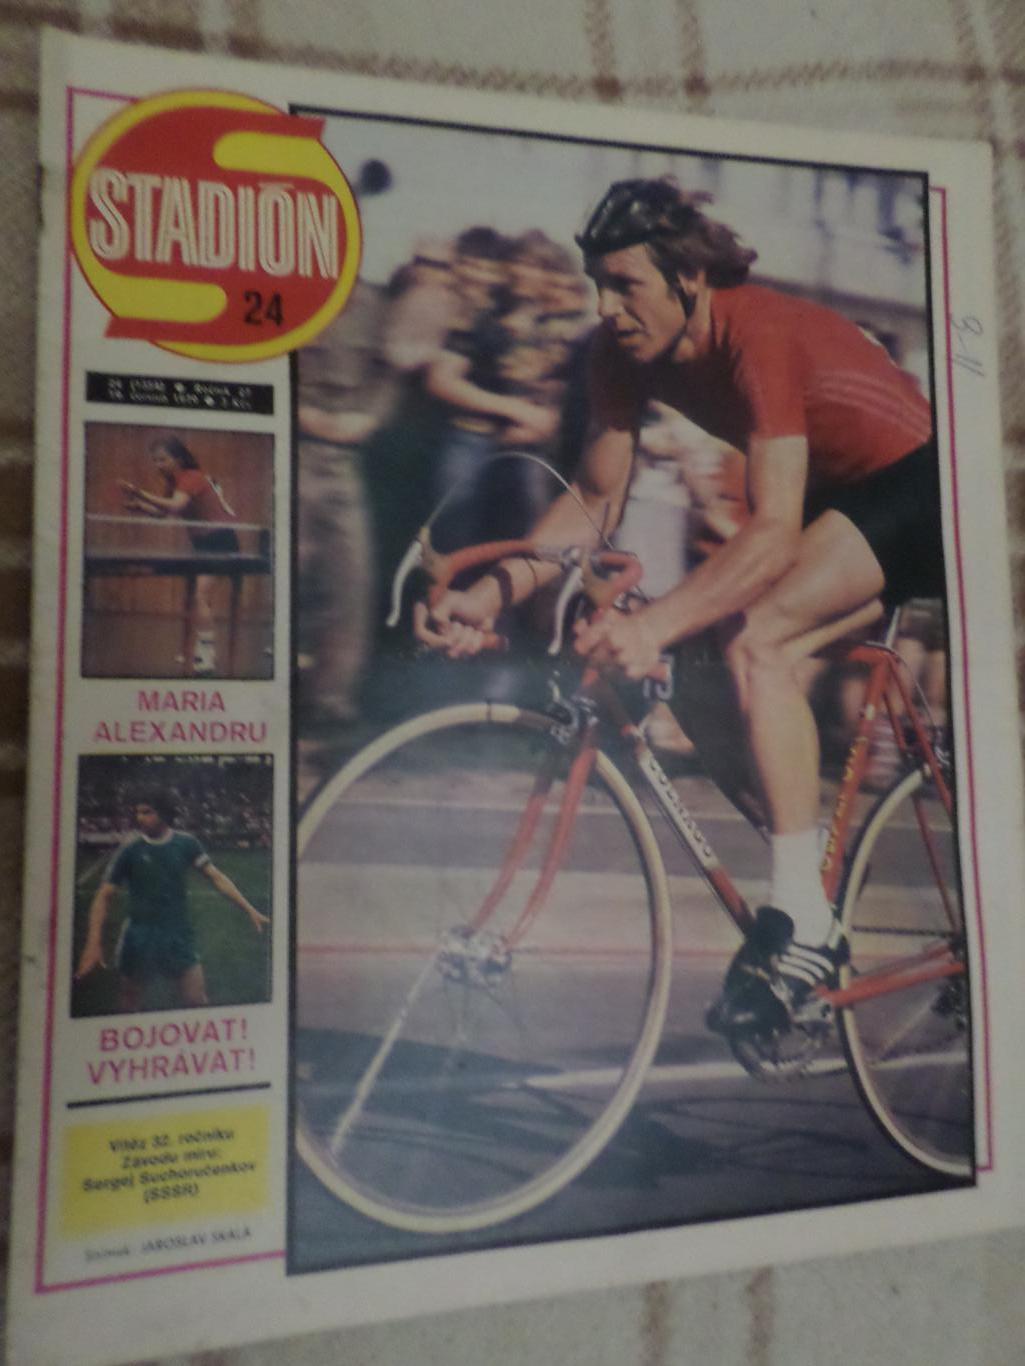 журнал Стадион Чехословакия № 24 1979 г постер Фортуна Дюссельдорф